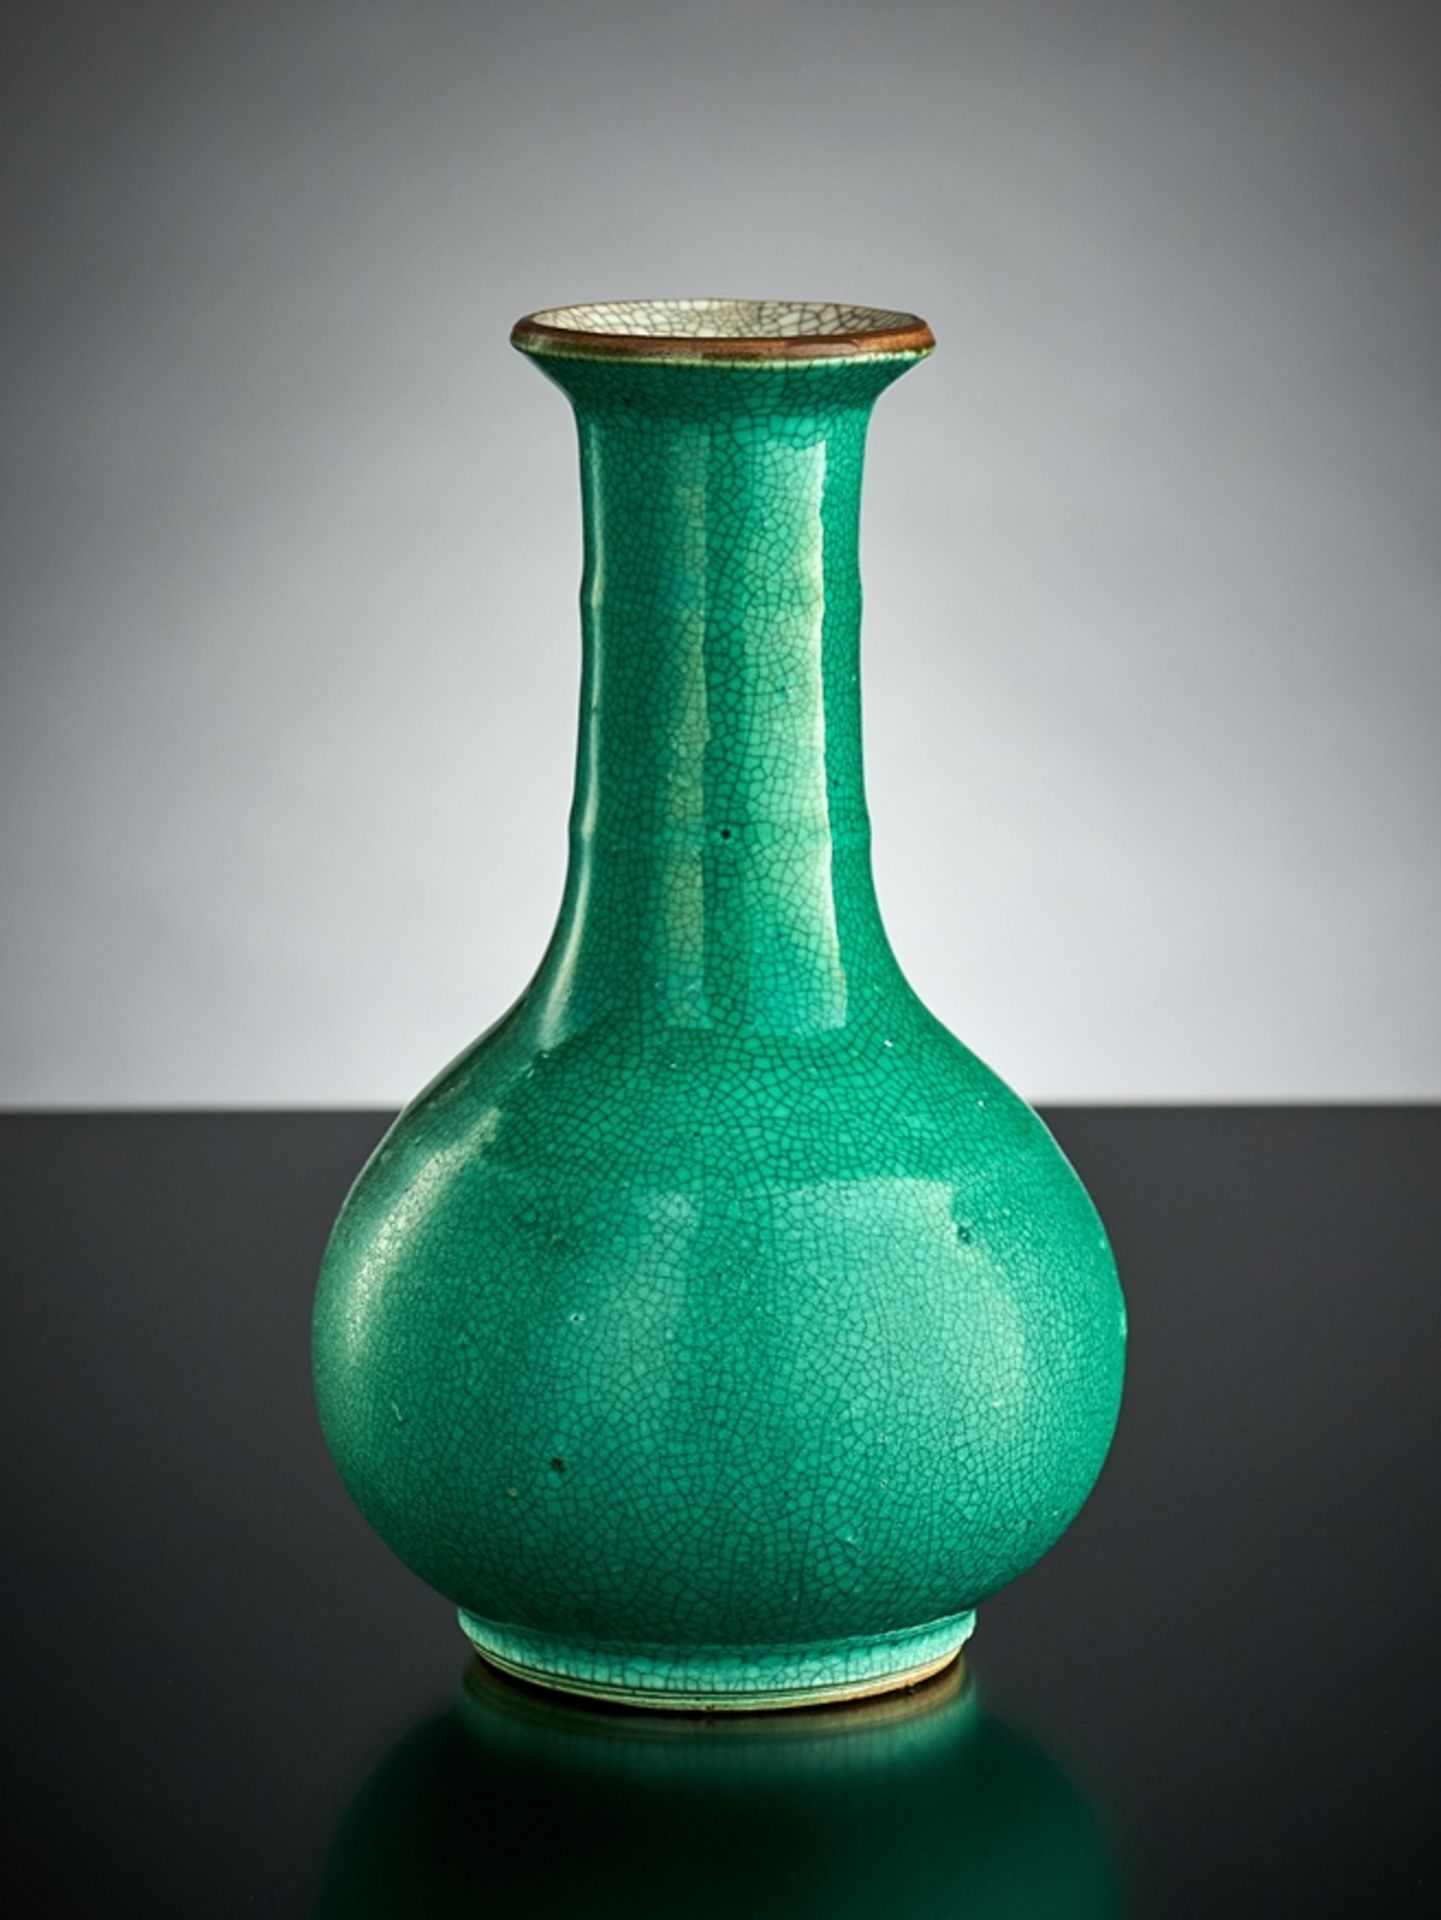 Feine Vase. Mit monochromem grünem Emaille-Craquelé. Braune Randlinie. China. H 15,5 cm